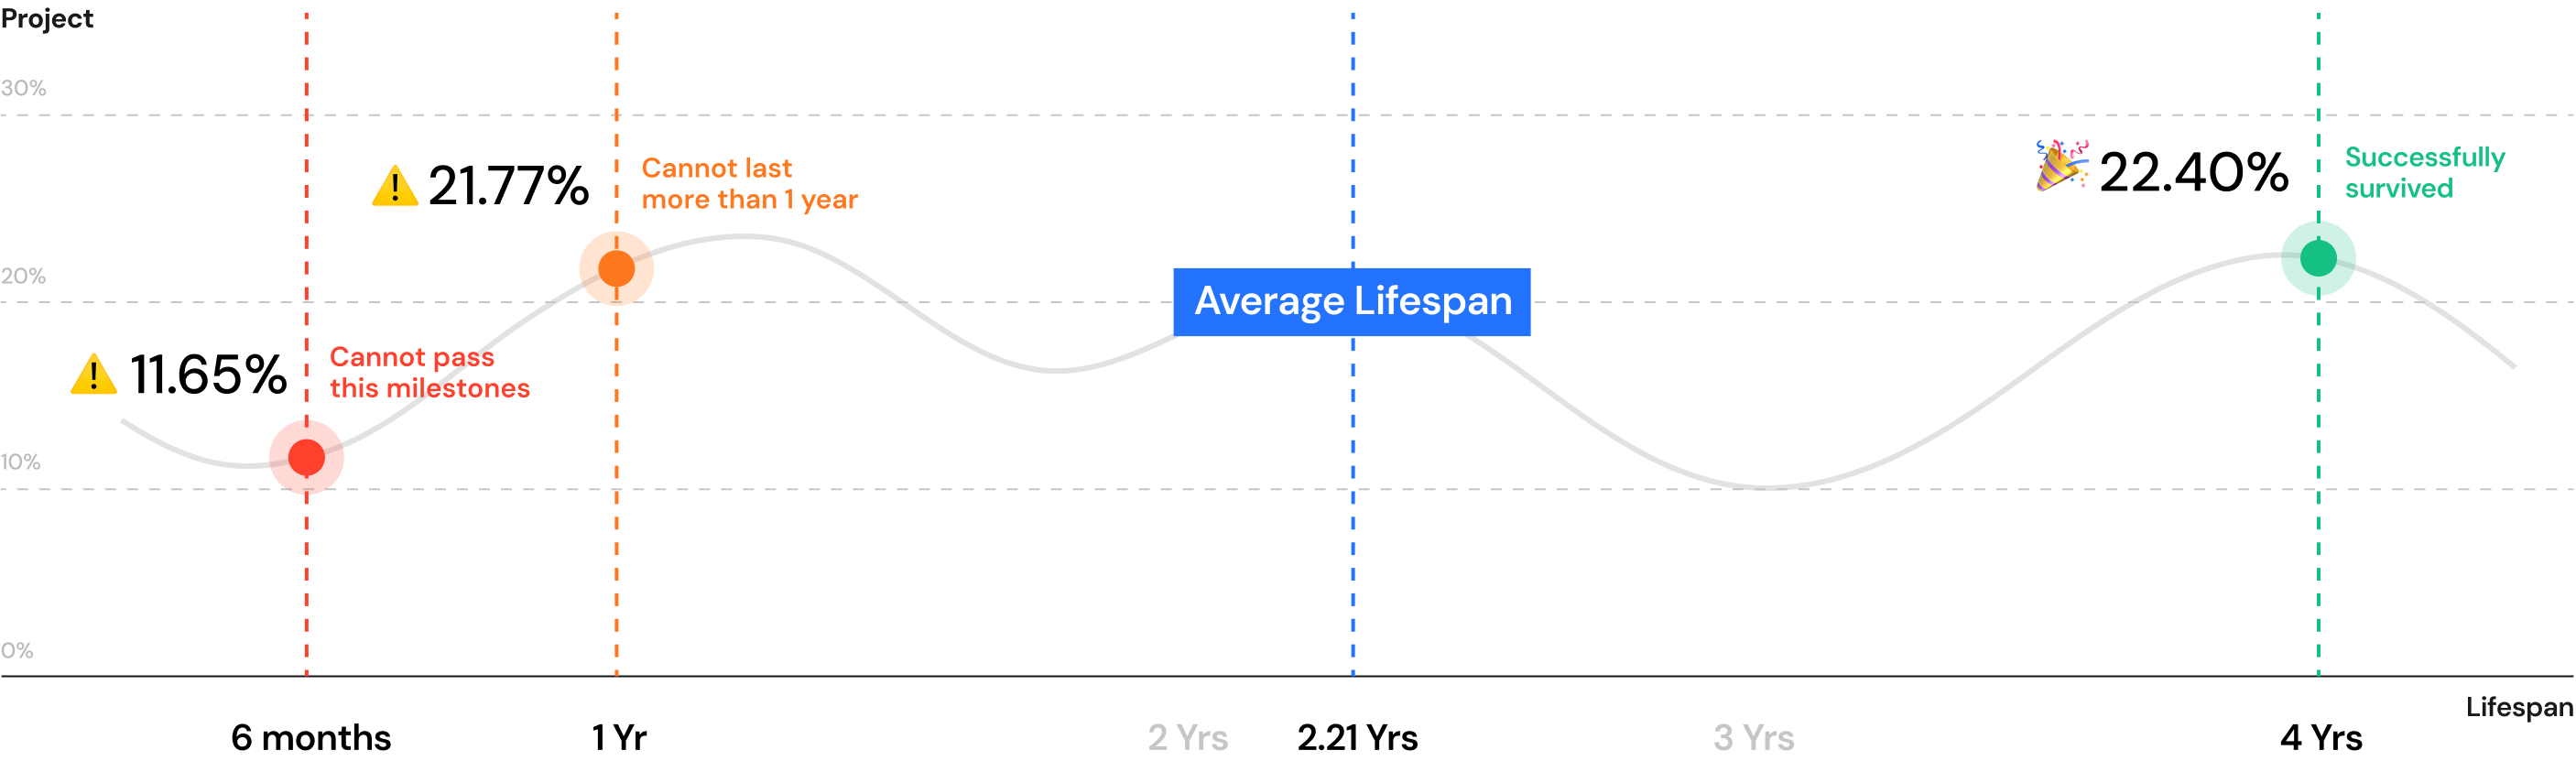 average-lifespan